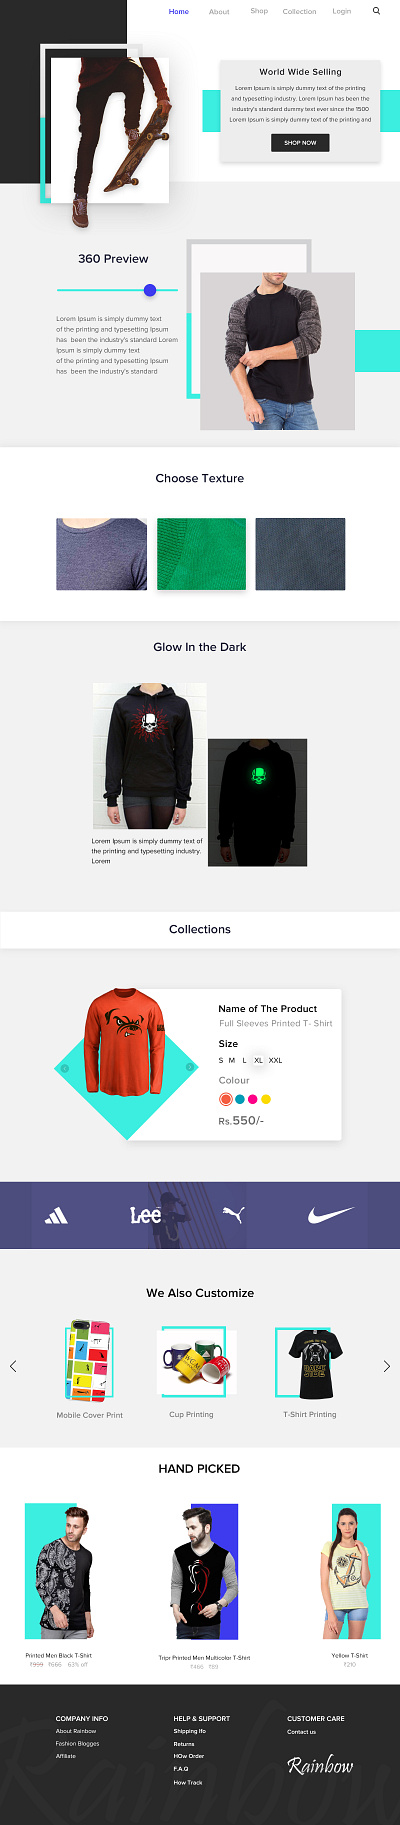 Rainbow E-commerce Website design app branding design graphic design illustration logo motion graphics typography ui ux vector website design